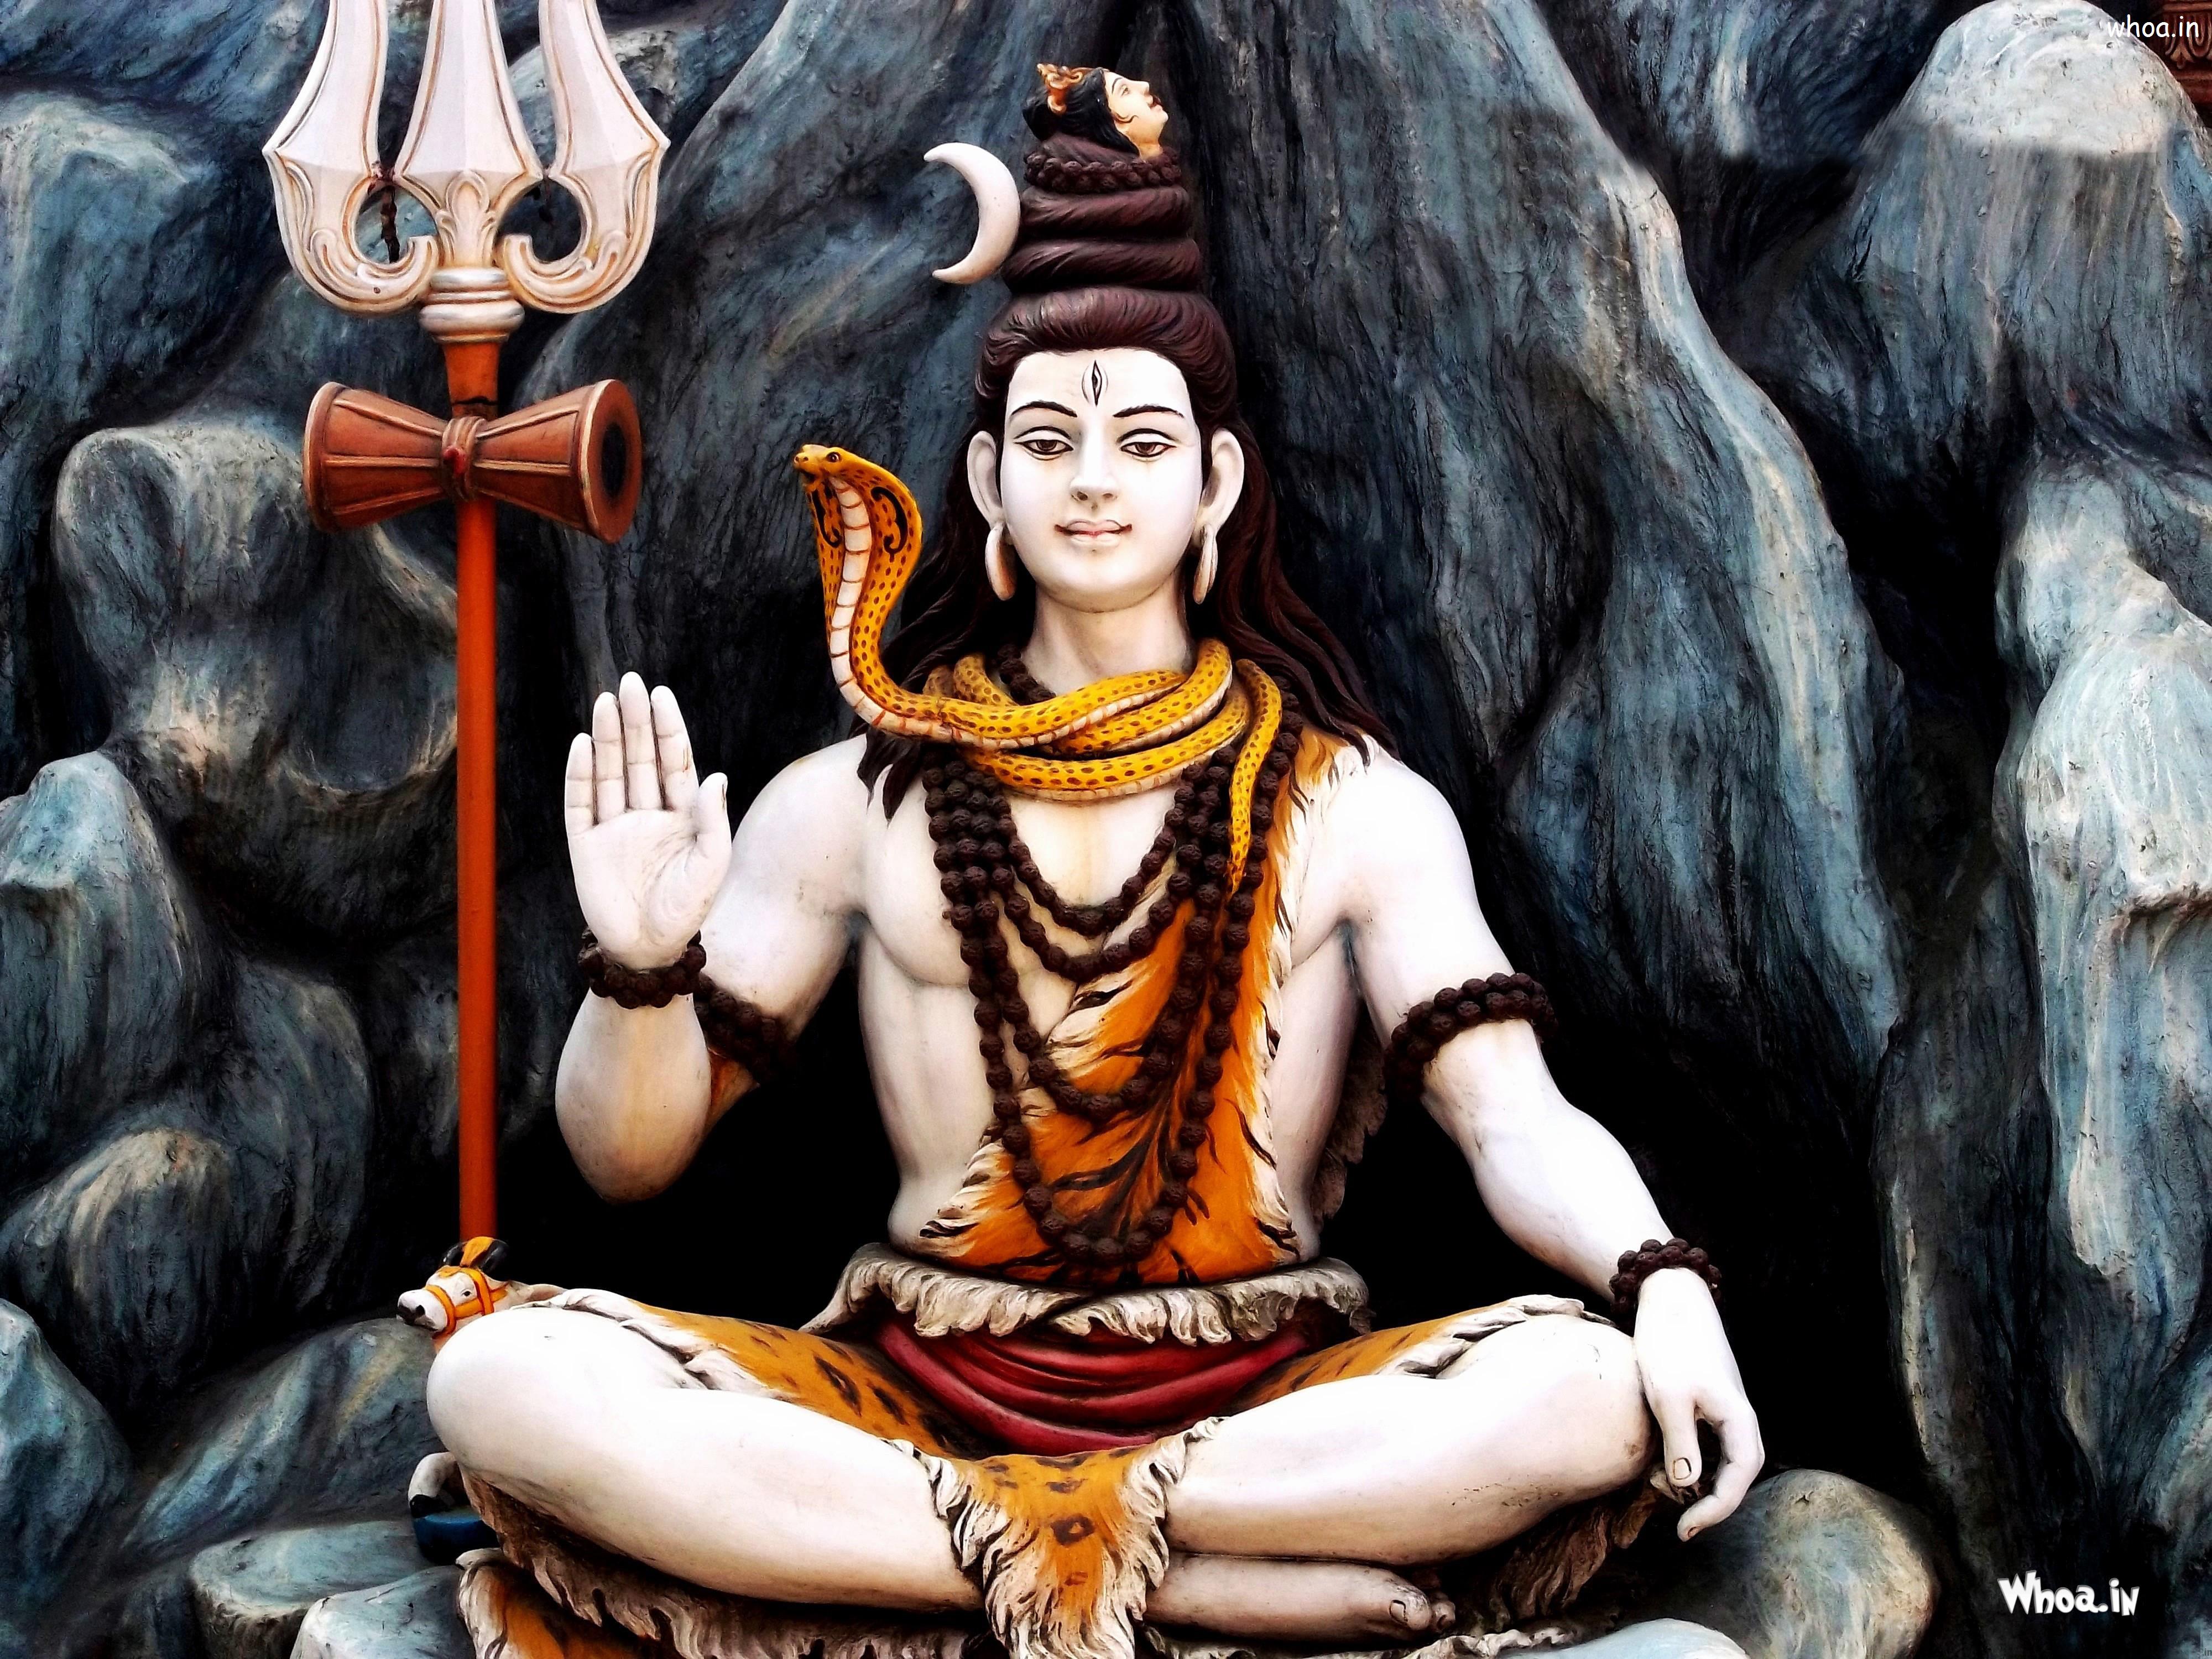 Bholenath Best Hand Painting Shiva Wearing Rudraksha